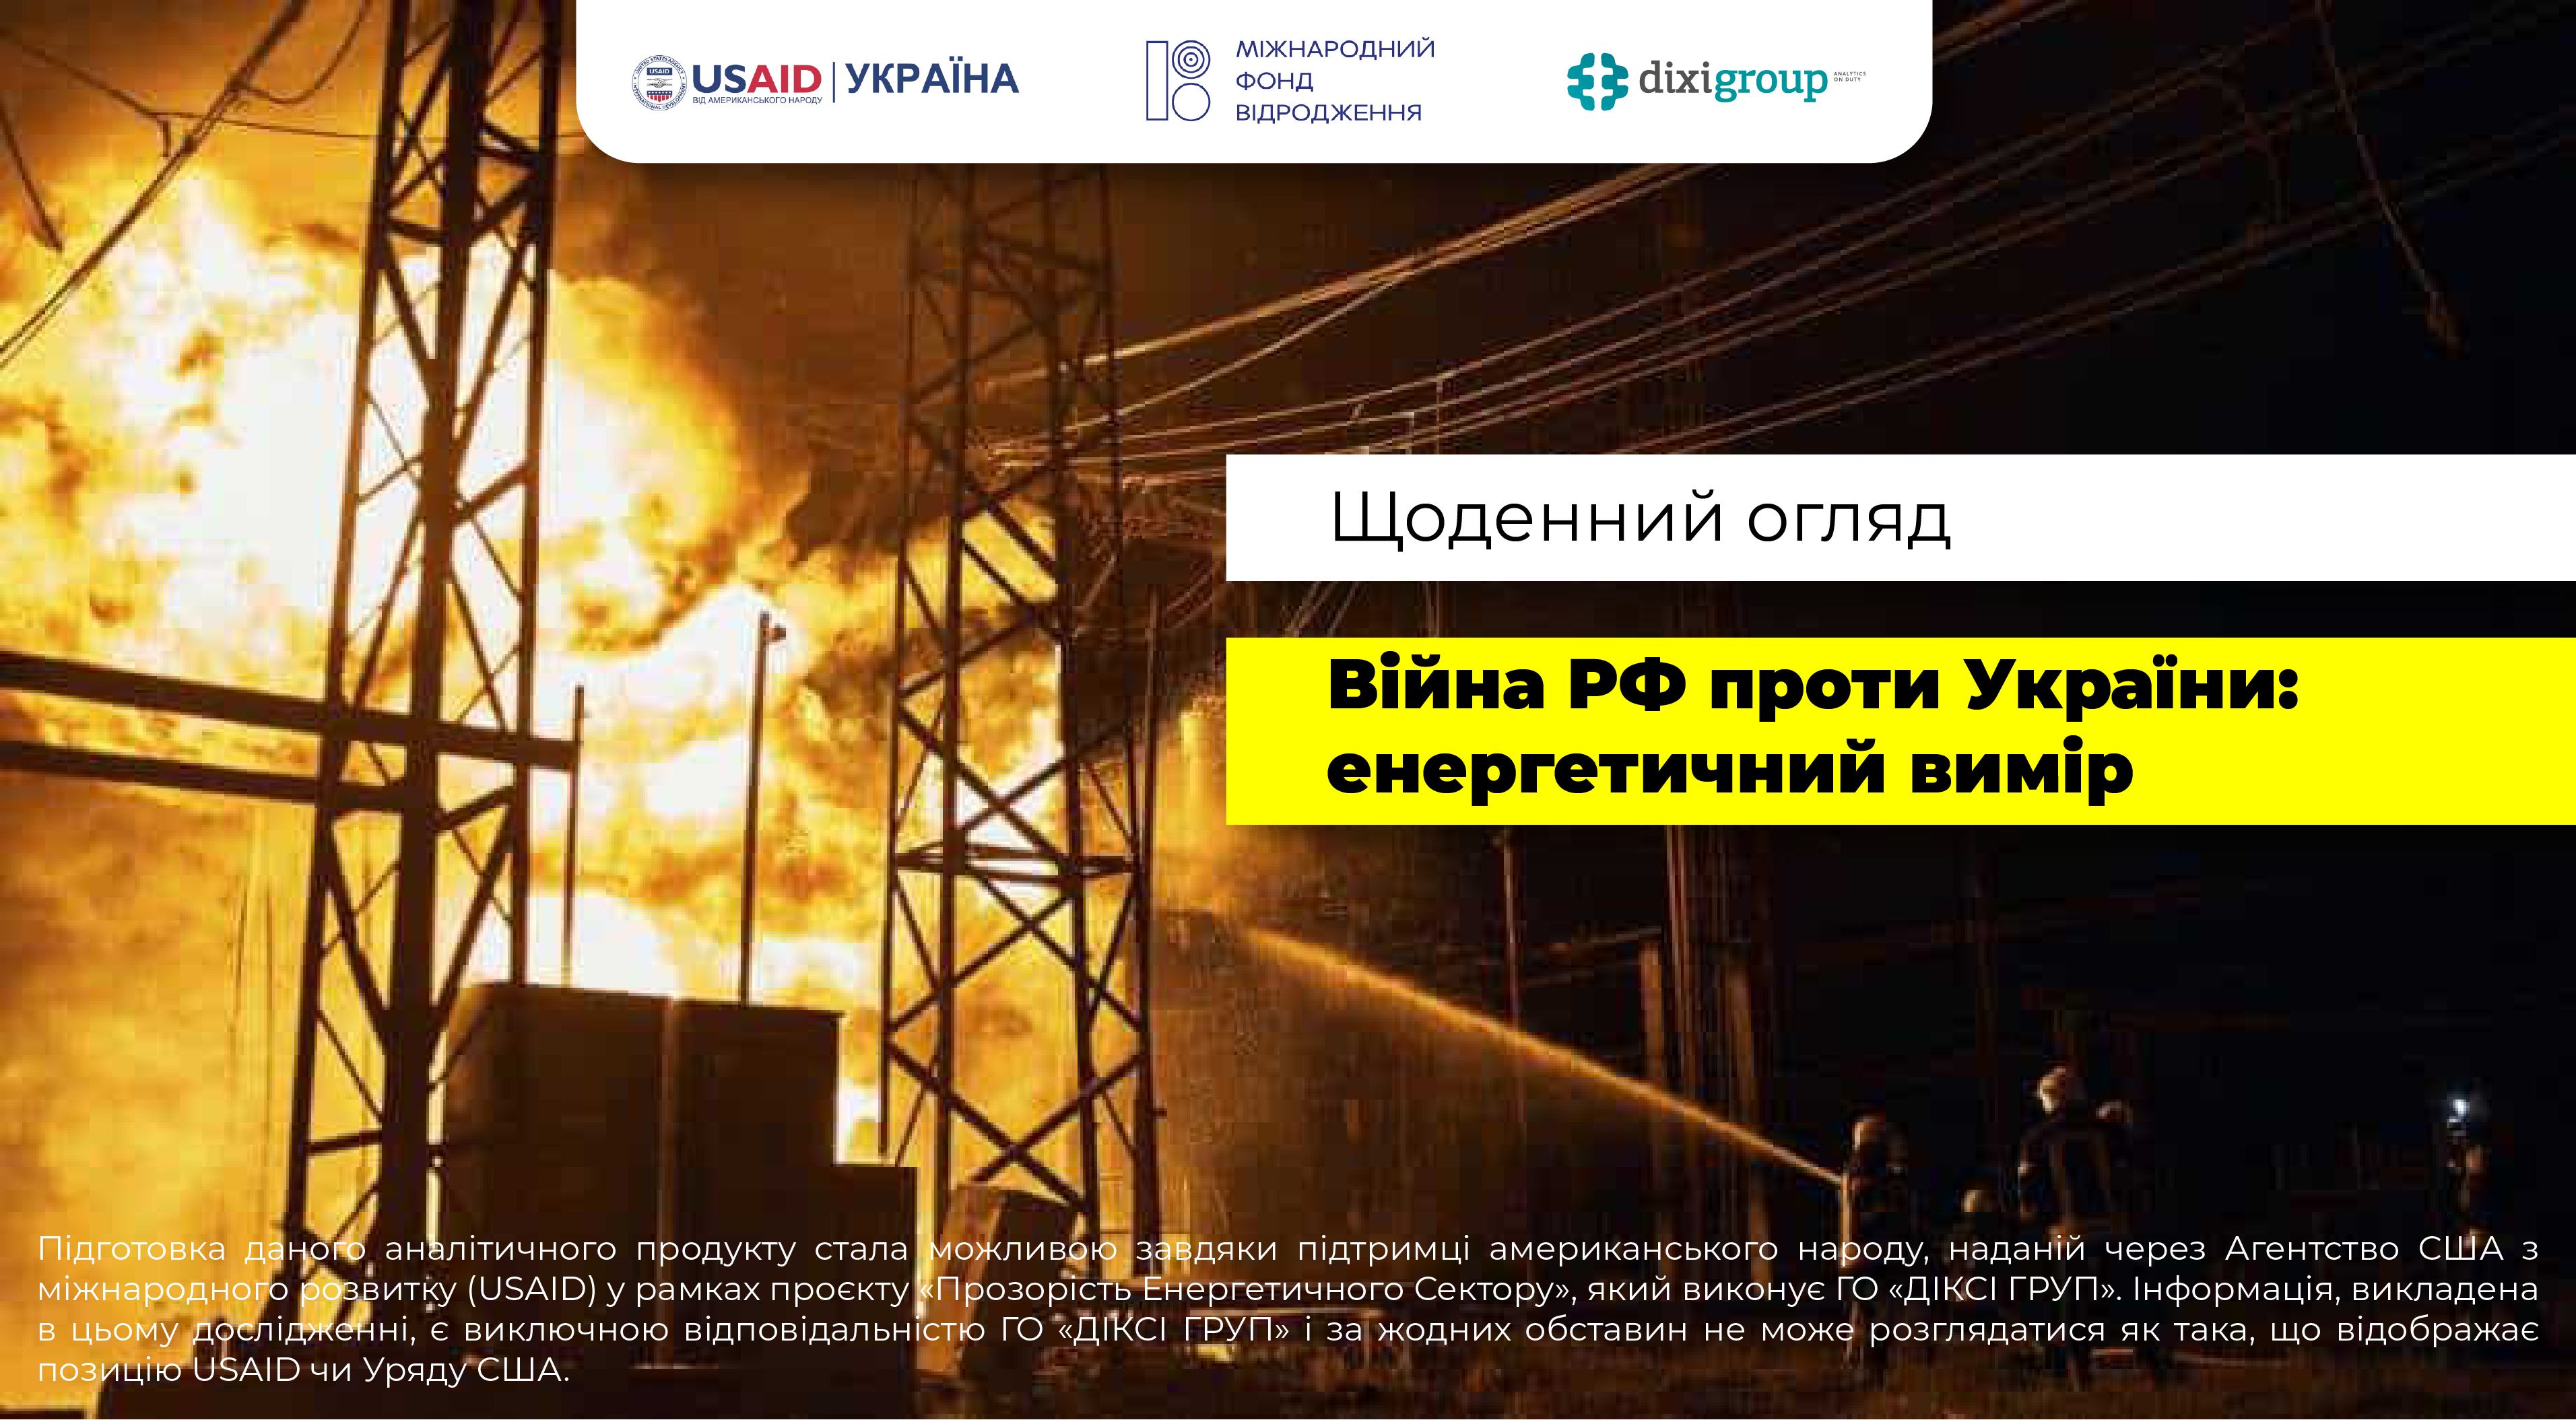 Війна росії проти України: енергетичний вимір (DiXi Group alert) – 22 березня